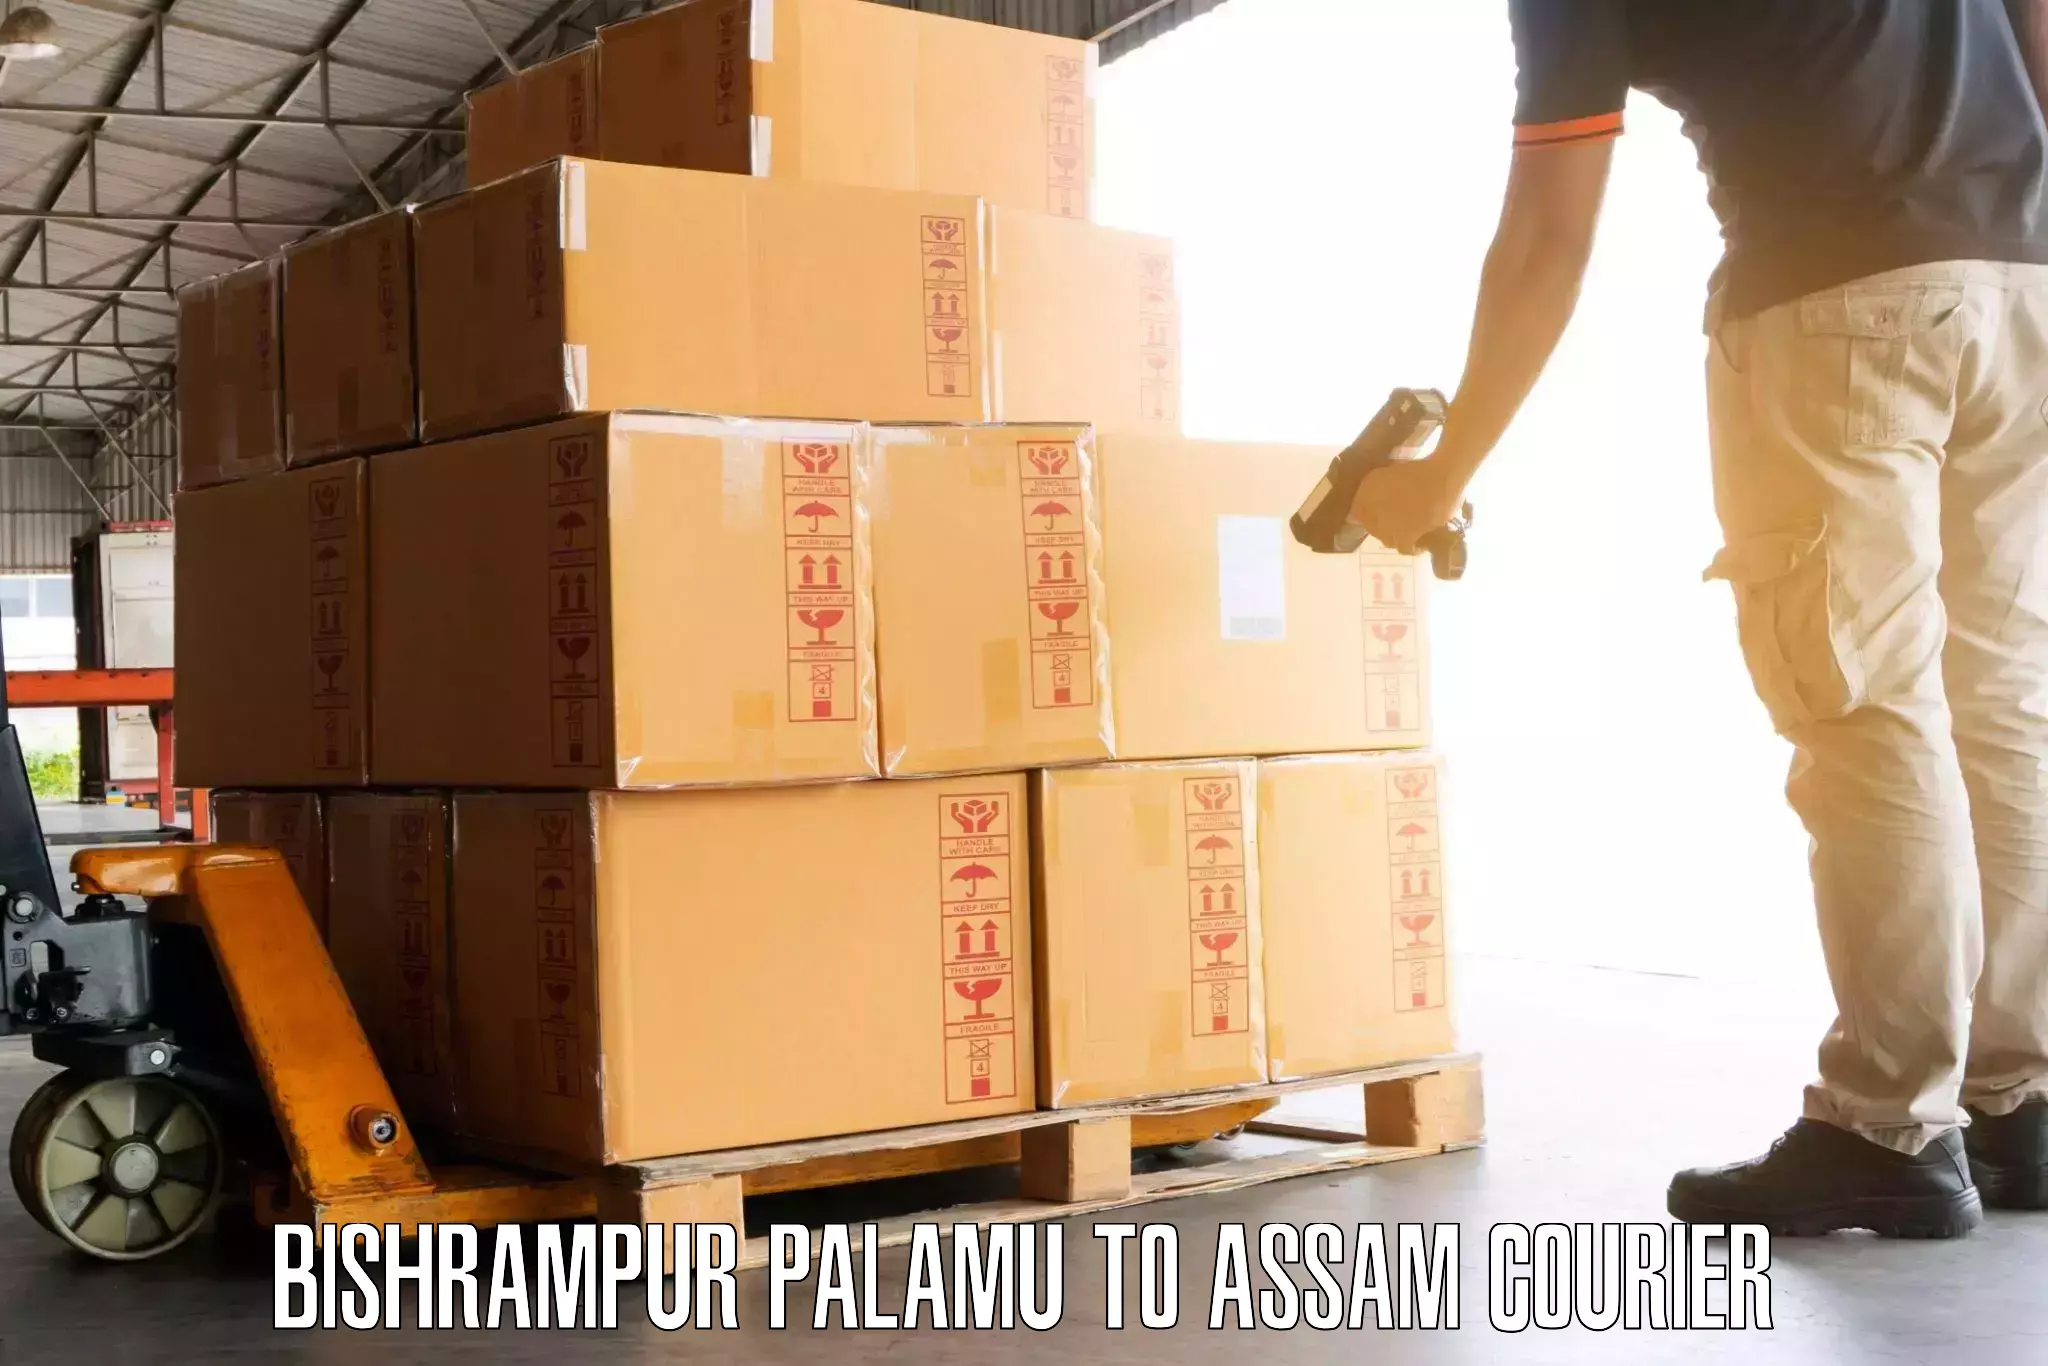 Baggage shipping service Bishrampur Palamu to Assam